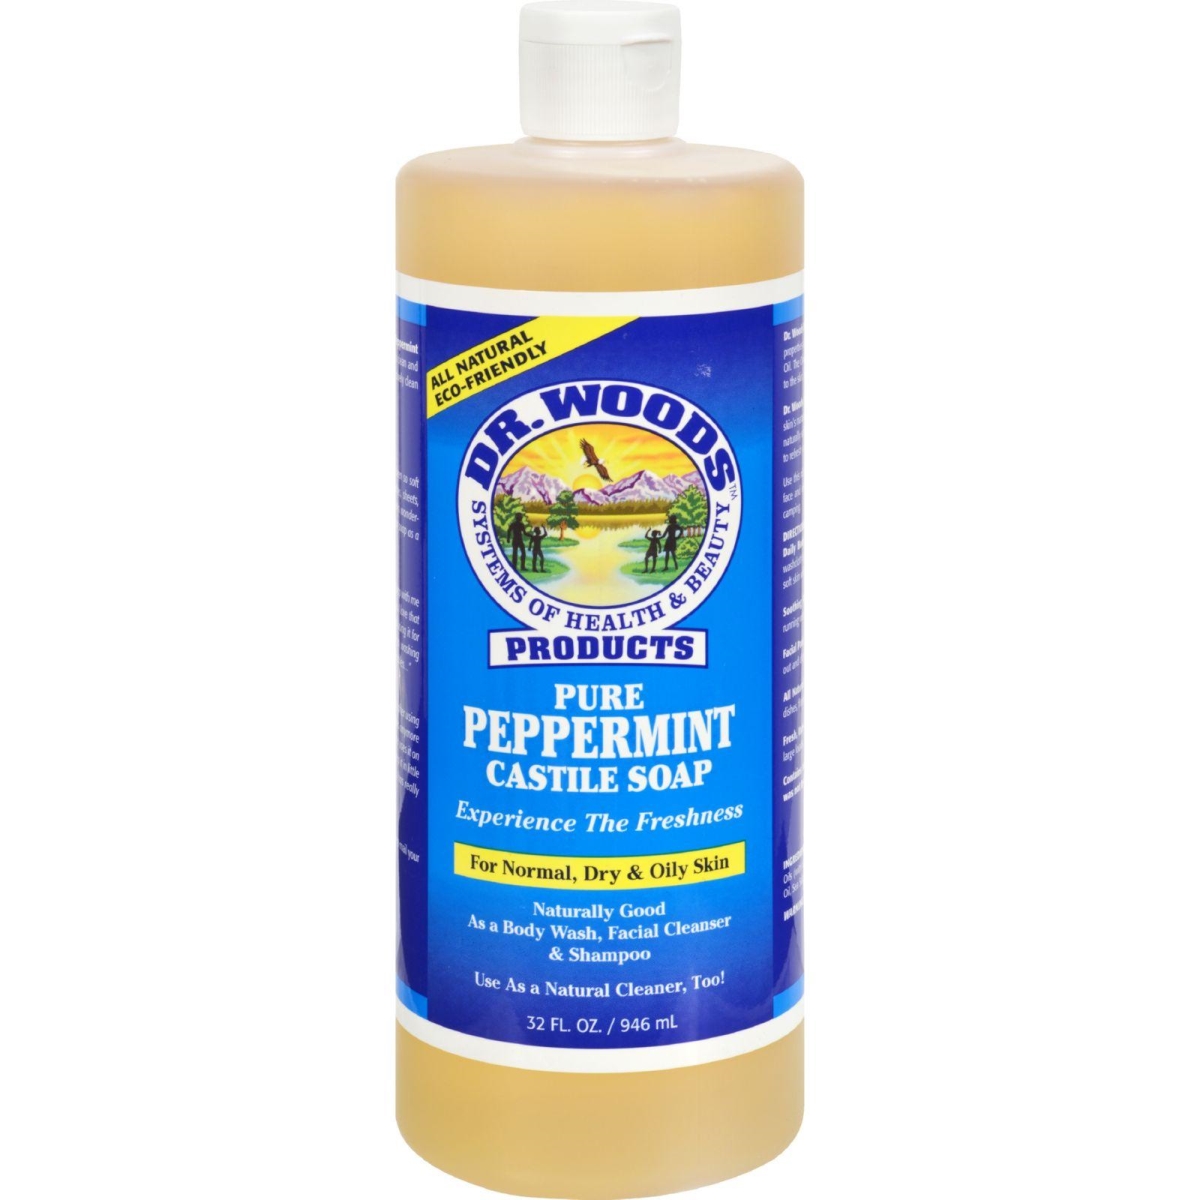 Hg0771758 32 Fl Oz Pure Castile Soap, Peppermint